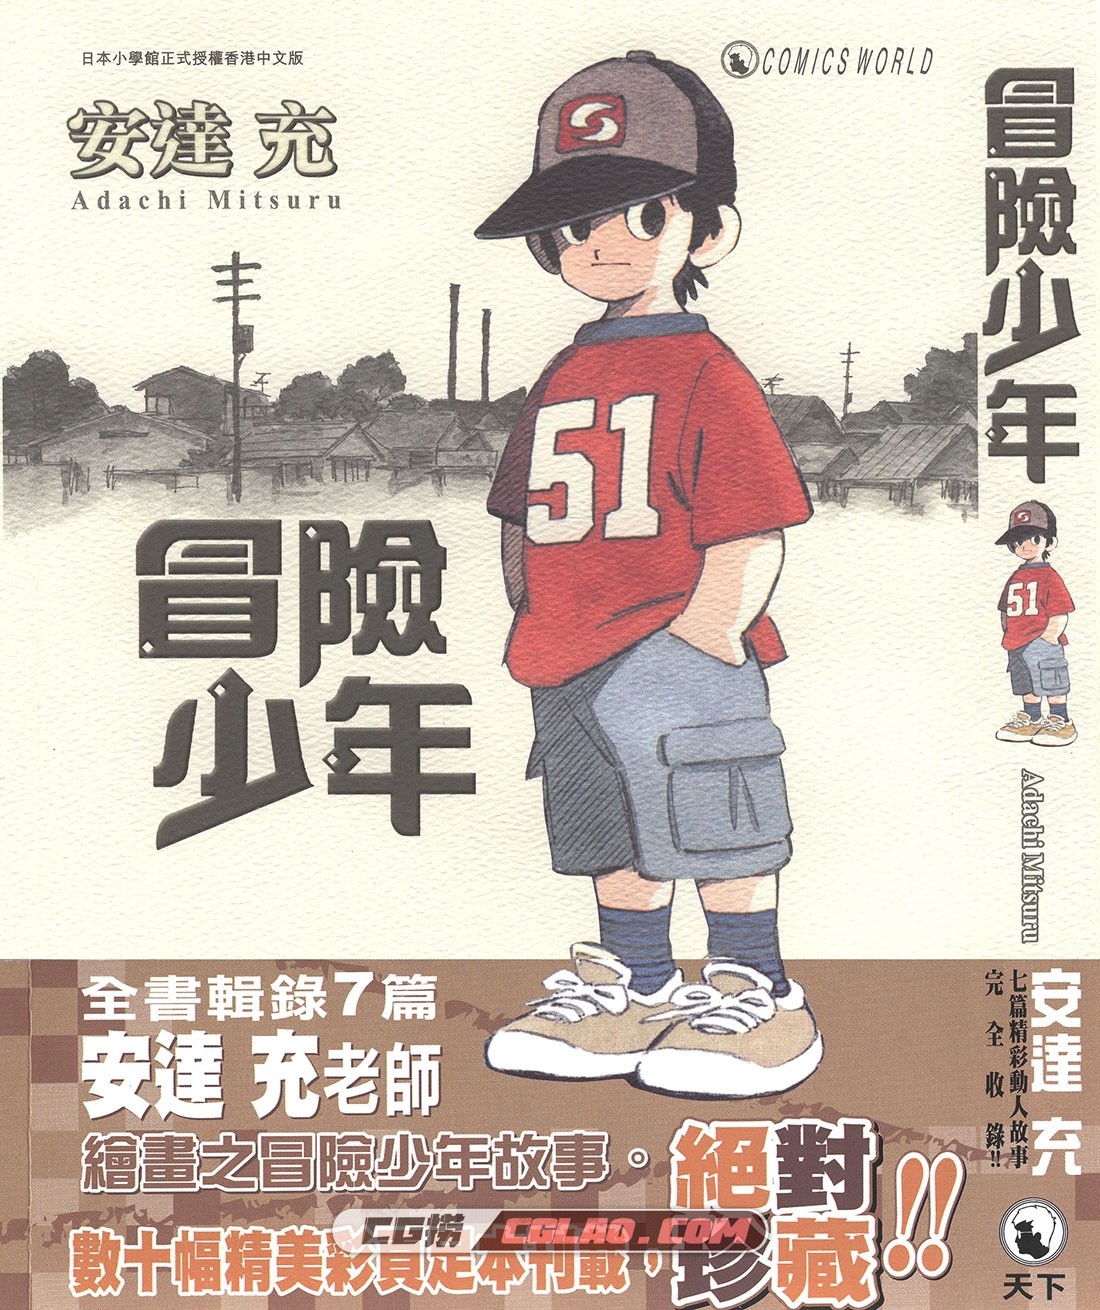 冒险少年 安达充 全一册 日本漫画下载百度云网盘下载,_O00-_0000.jpg